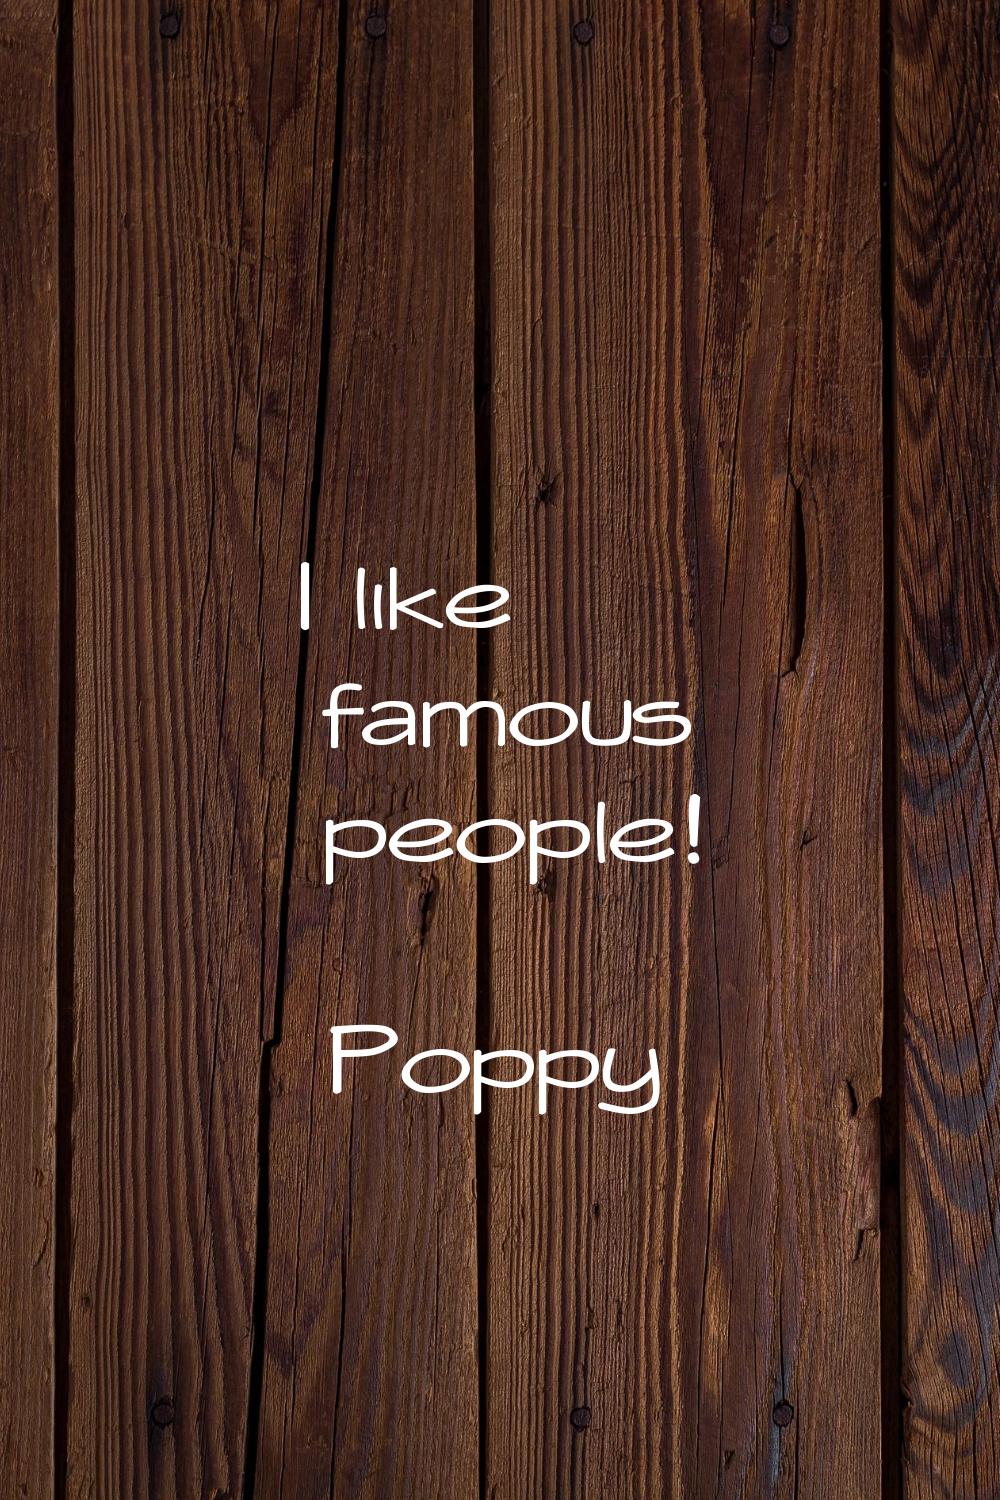 I like famous people!